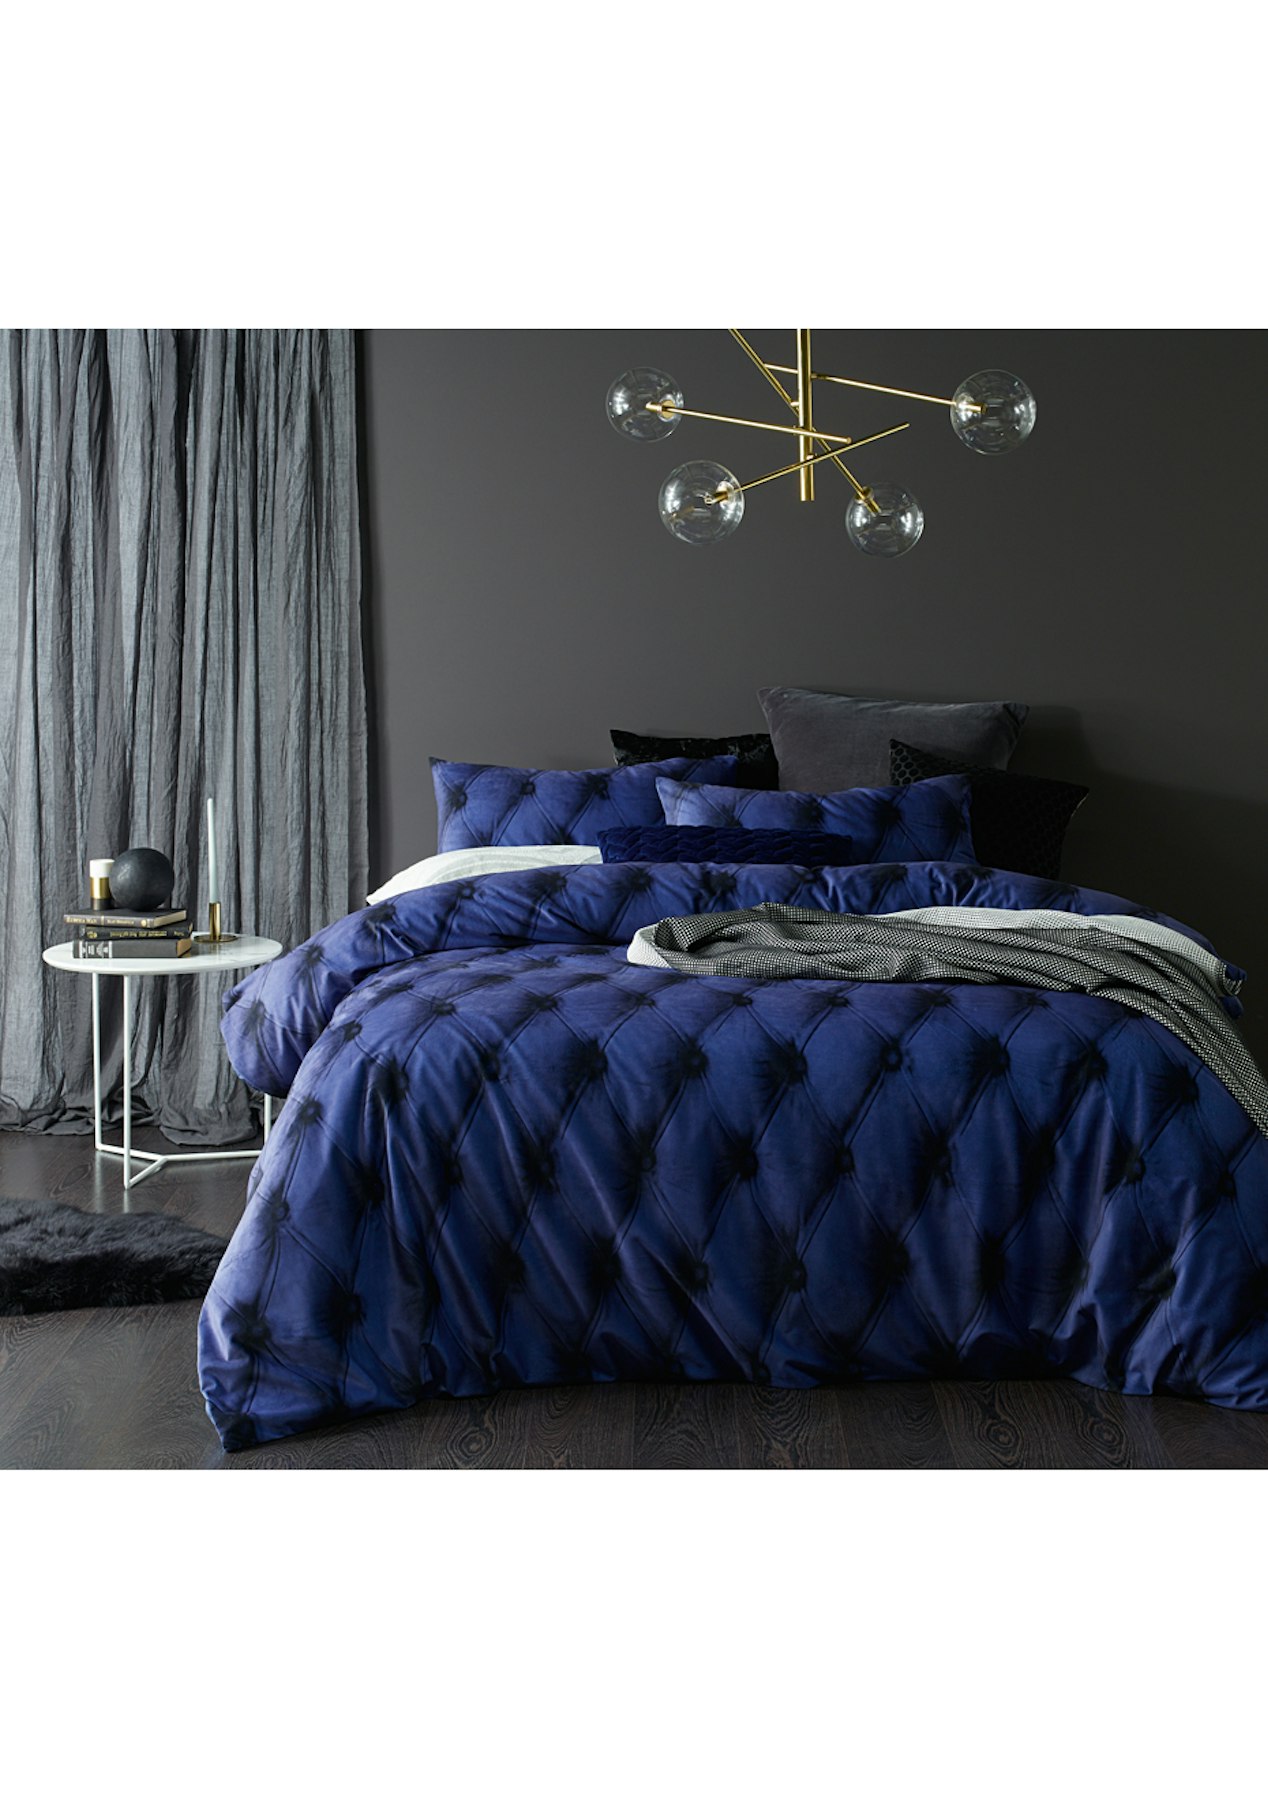 Blue Buttons Printed Velvet Quilt Cover Set King Bed Matte Black